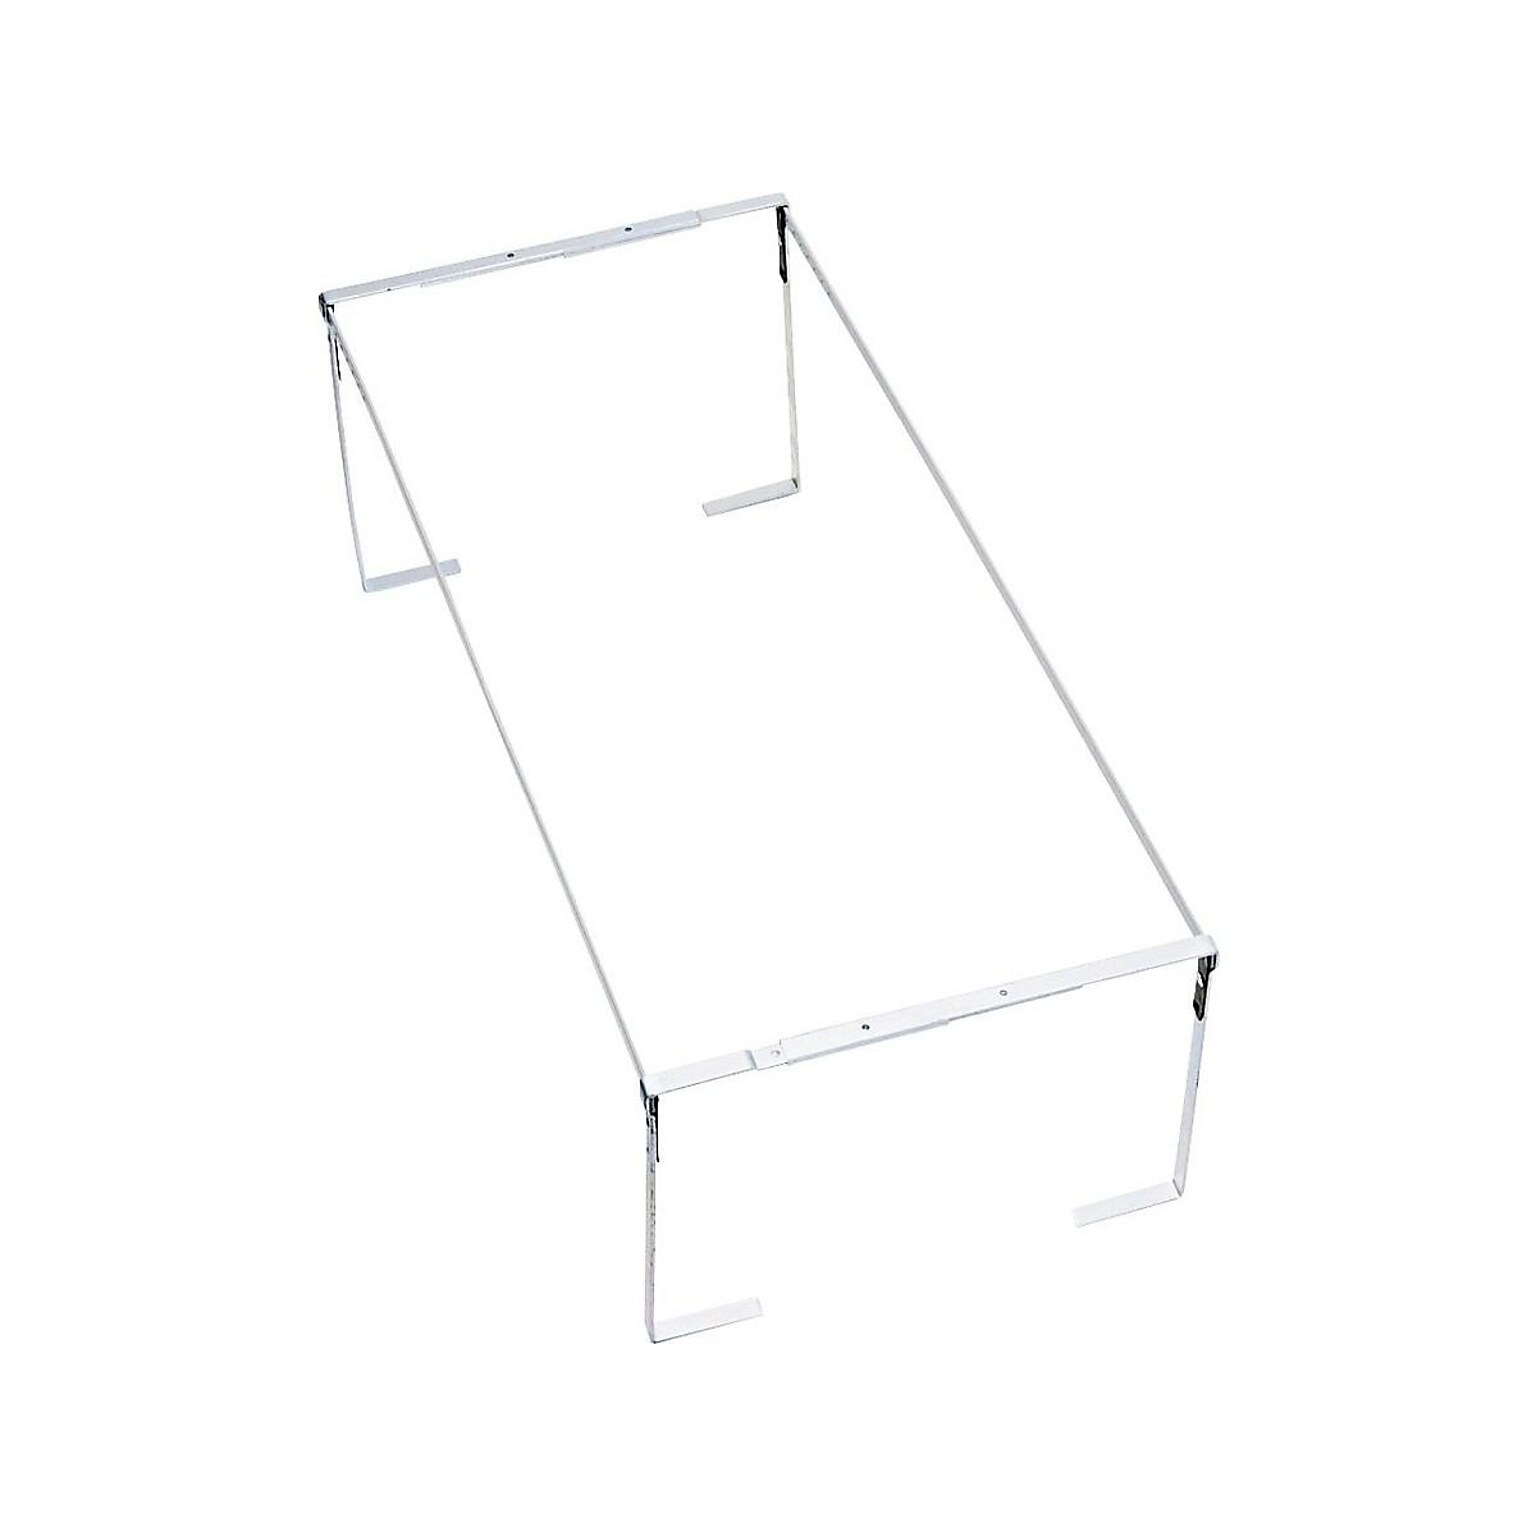 Pendaflex Adjustable Hanging File Frames, Letter/Legal Size, Silver (PFX 450)